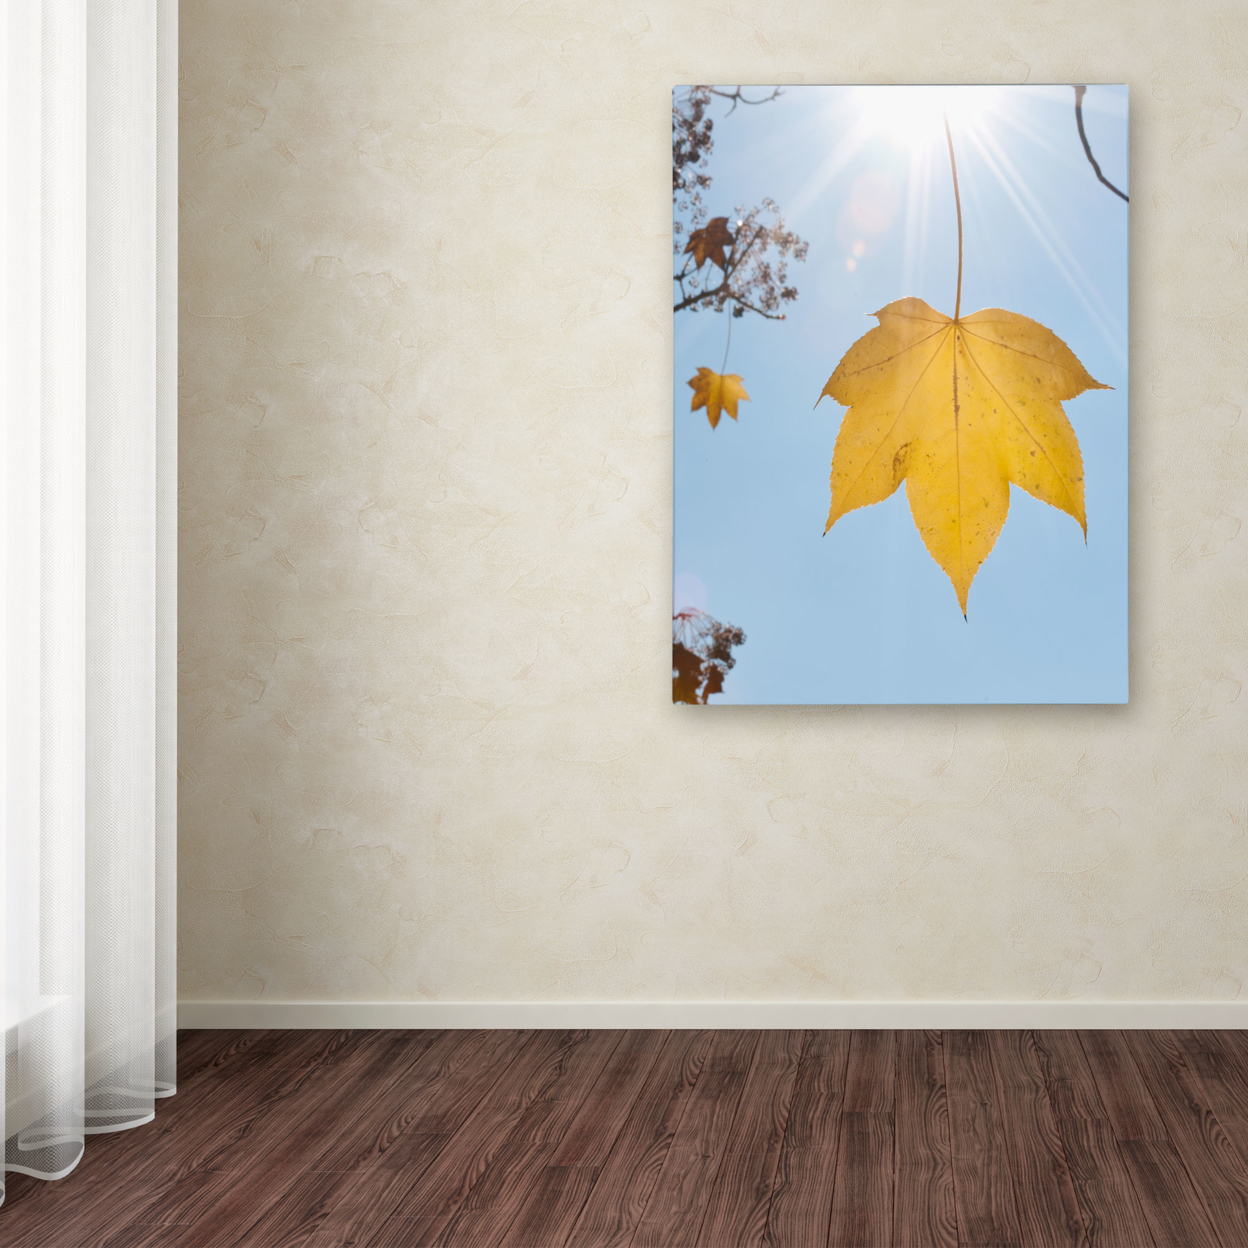 Kurt Shaffer 'Autumn Inspiration' Canvas Wall Art 35 X 47 Inches